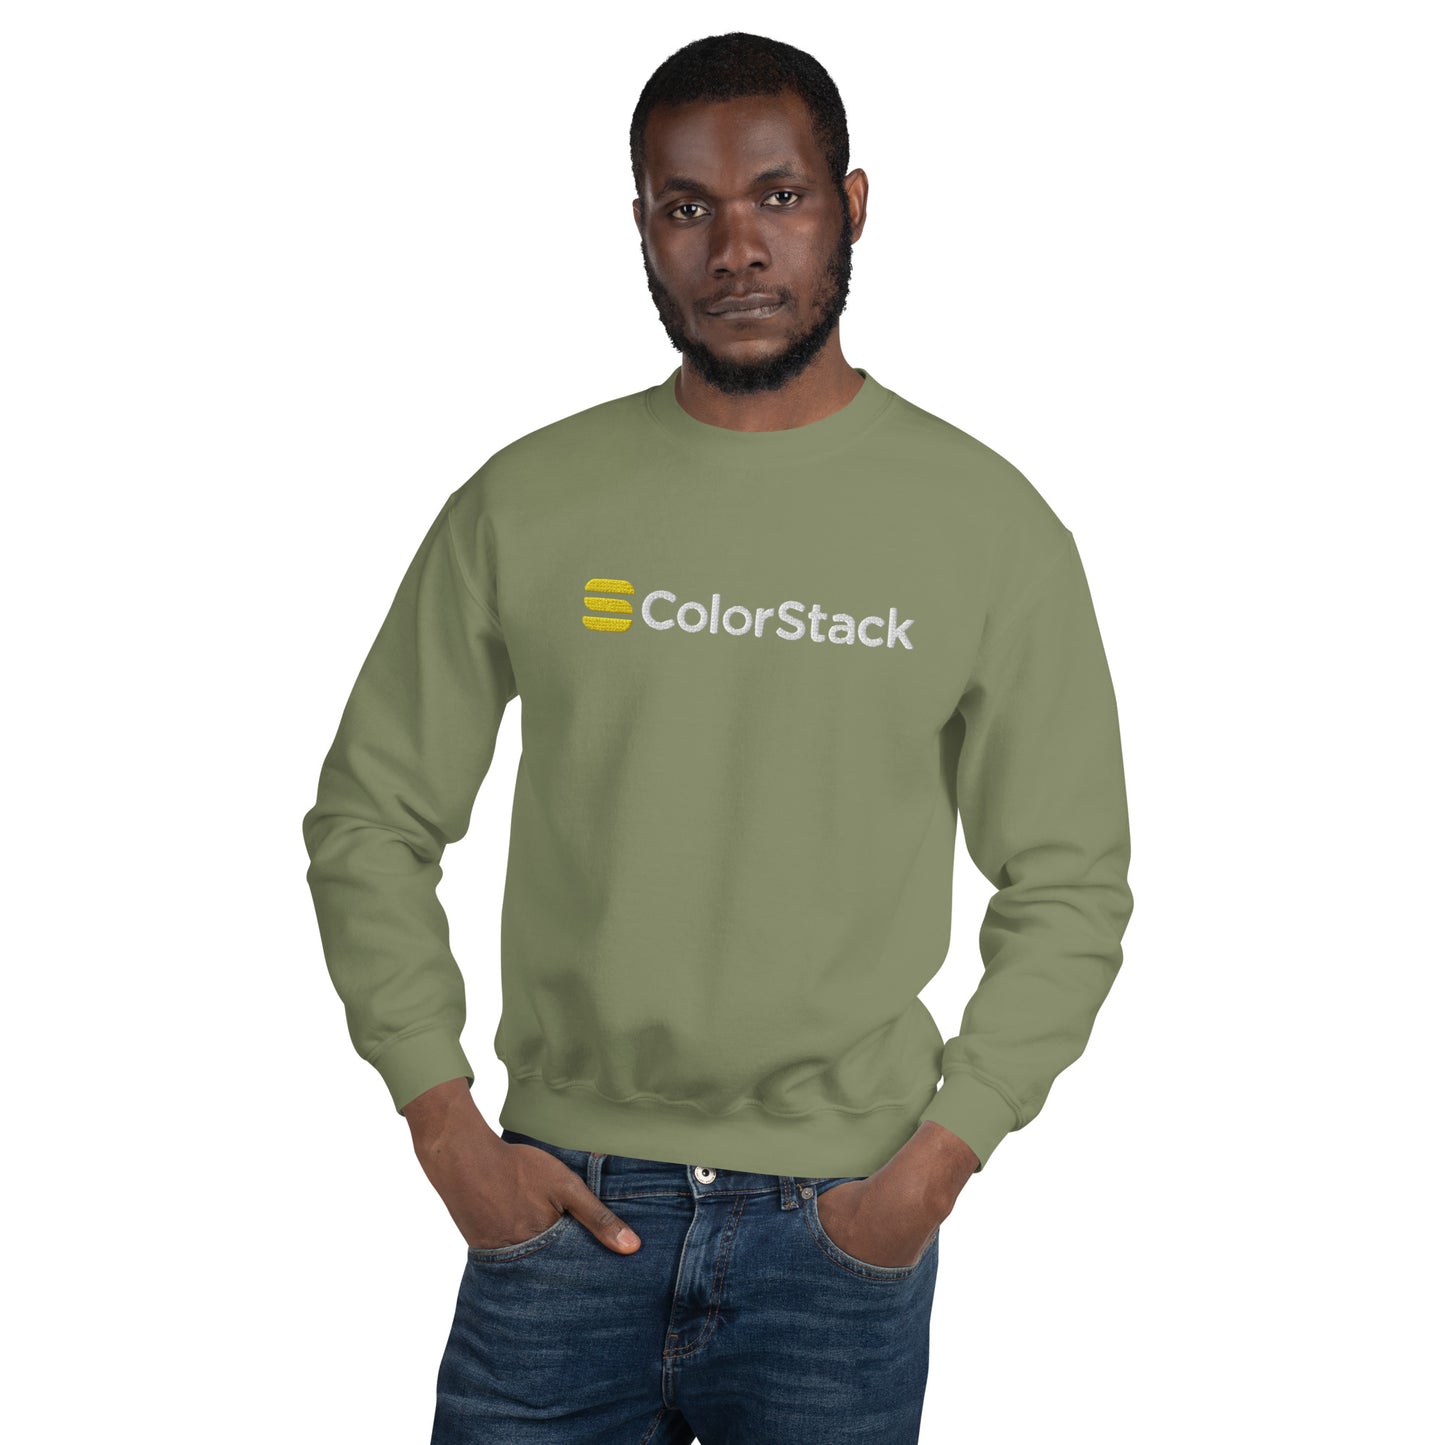 ColorStack Unisex Sweatshirt